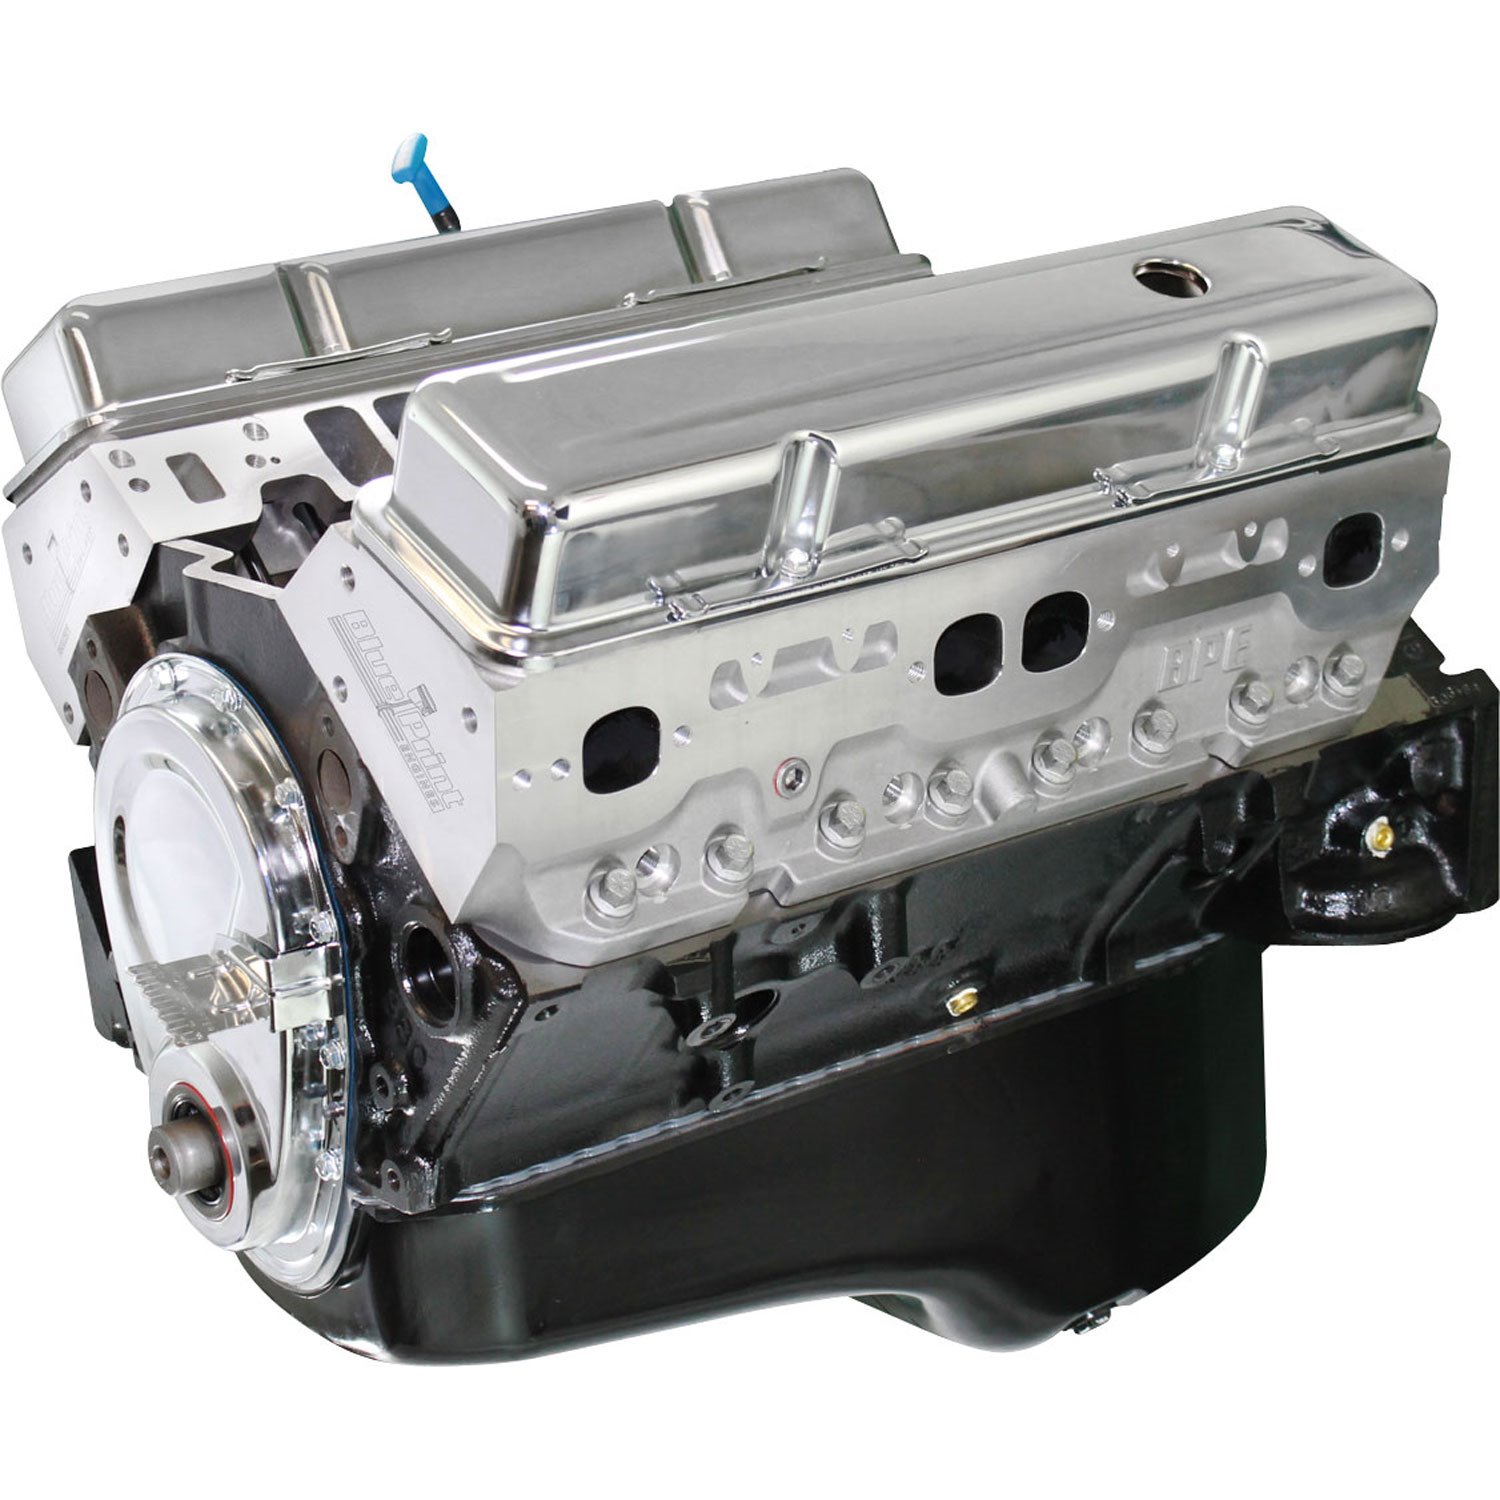 SBC 383ci Base Engine 430HP/450TQ w/ Aluminum Heads